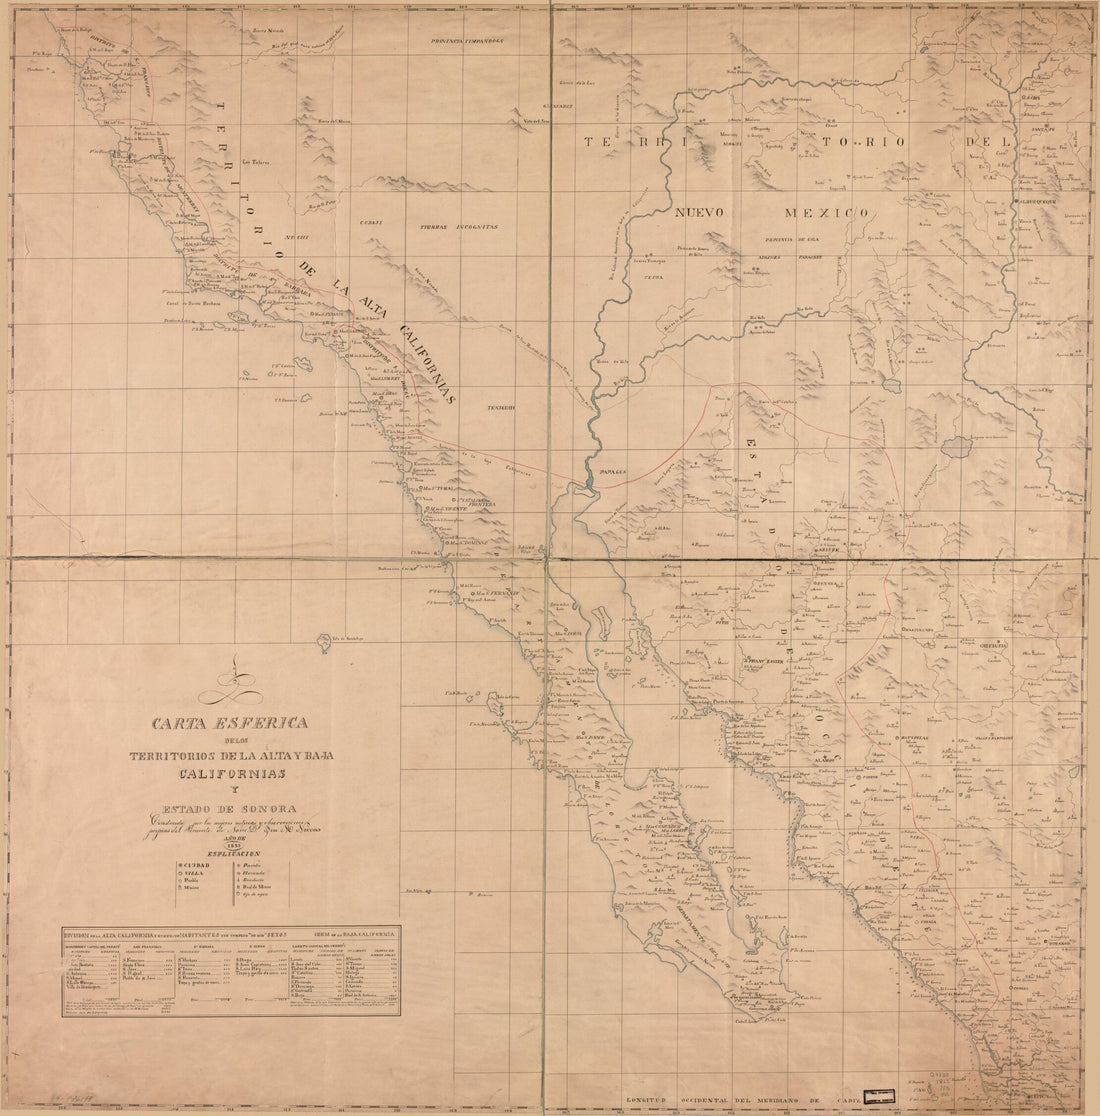 This old map of Carta Esferica De Los Territorios De La Alta Y Baja Californias Y Estado De Sonora from 1823 was created by Jose M. Narvaes in 1823